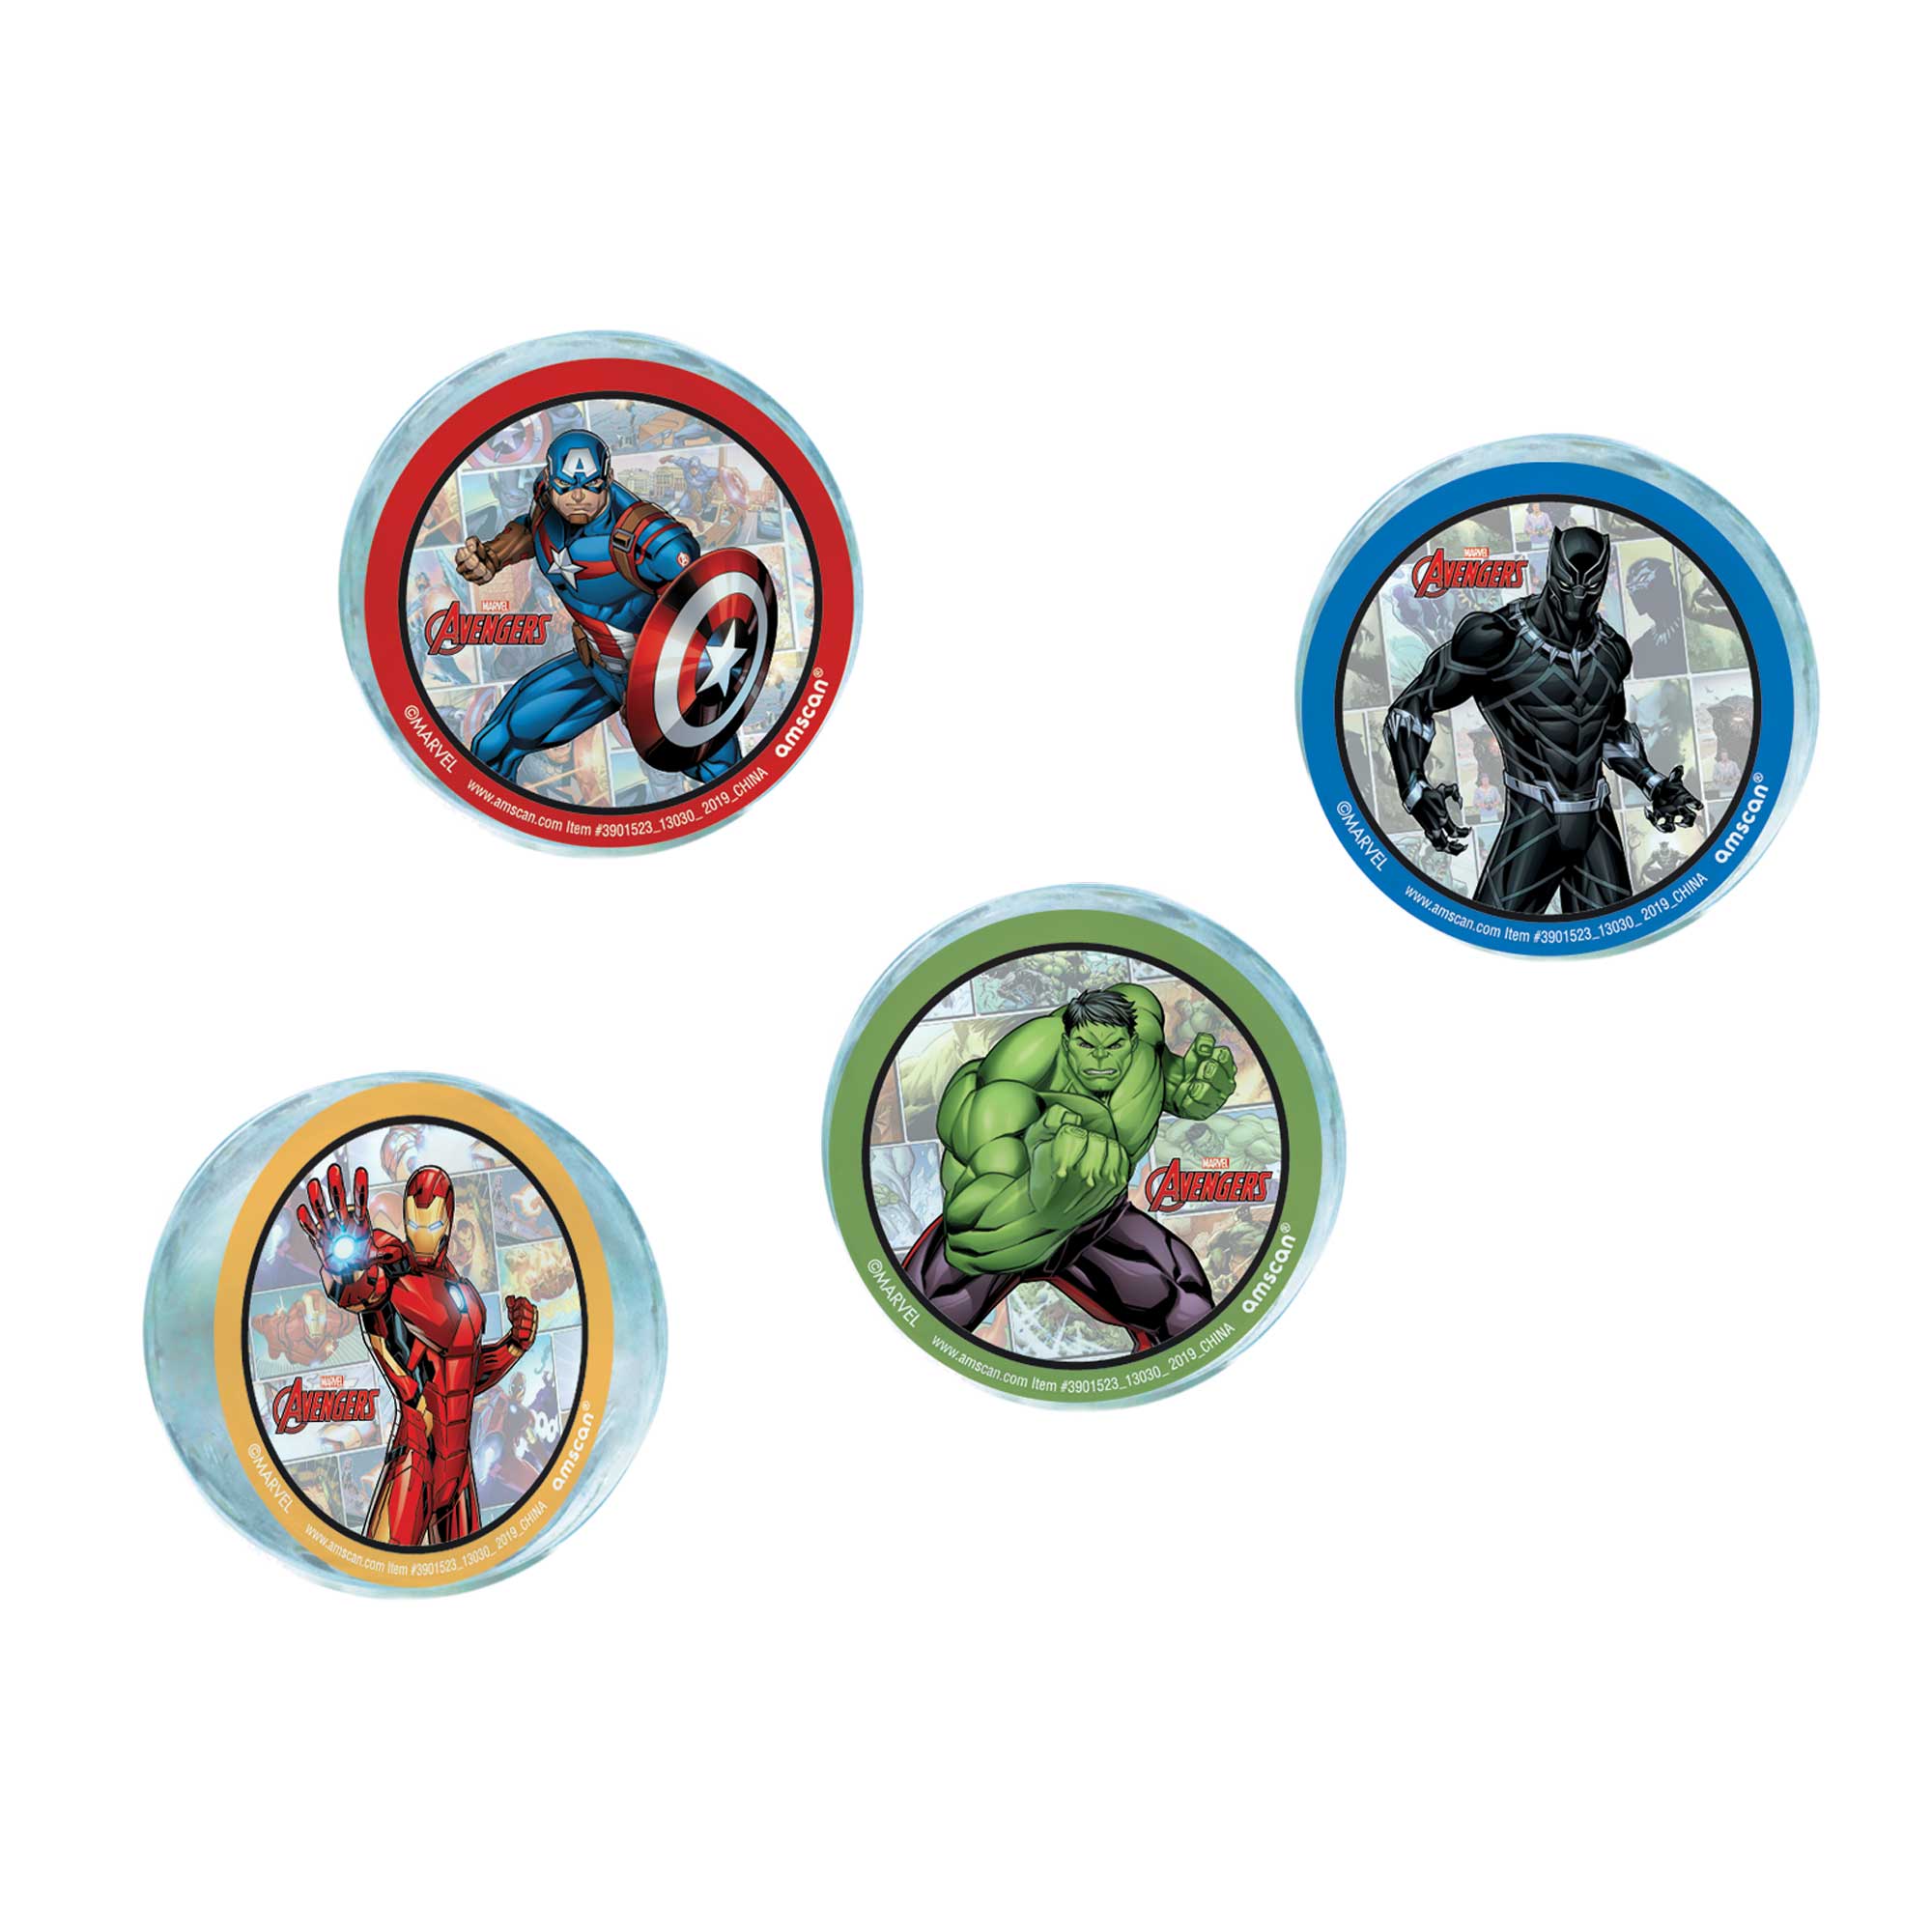 Marvel Avengers Powers Unite Bounce Balls Favors - 54mm 4 Pack Default Title